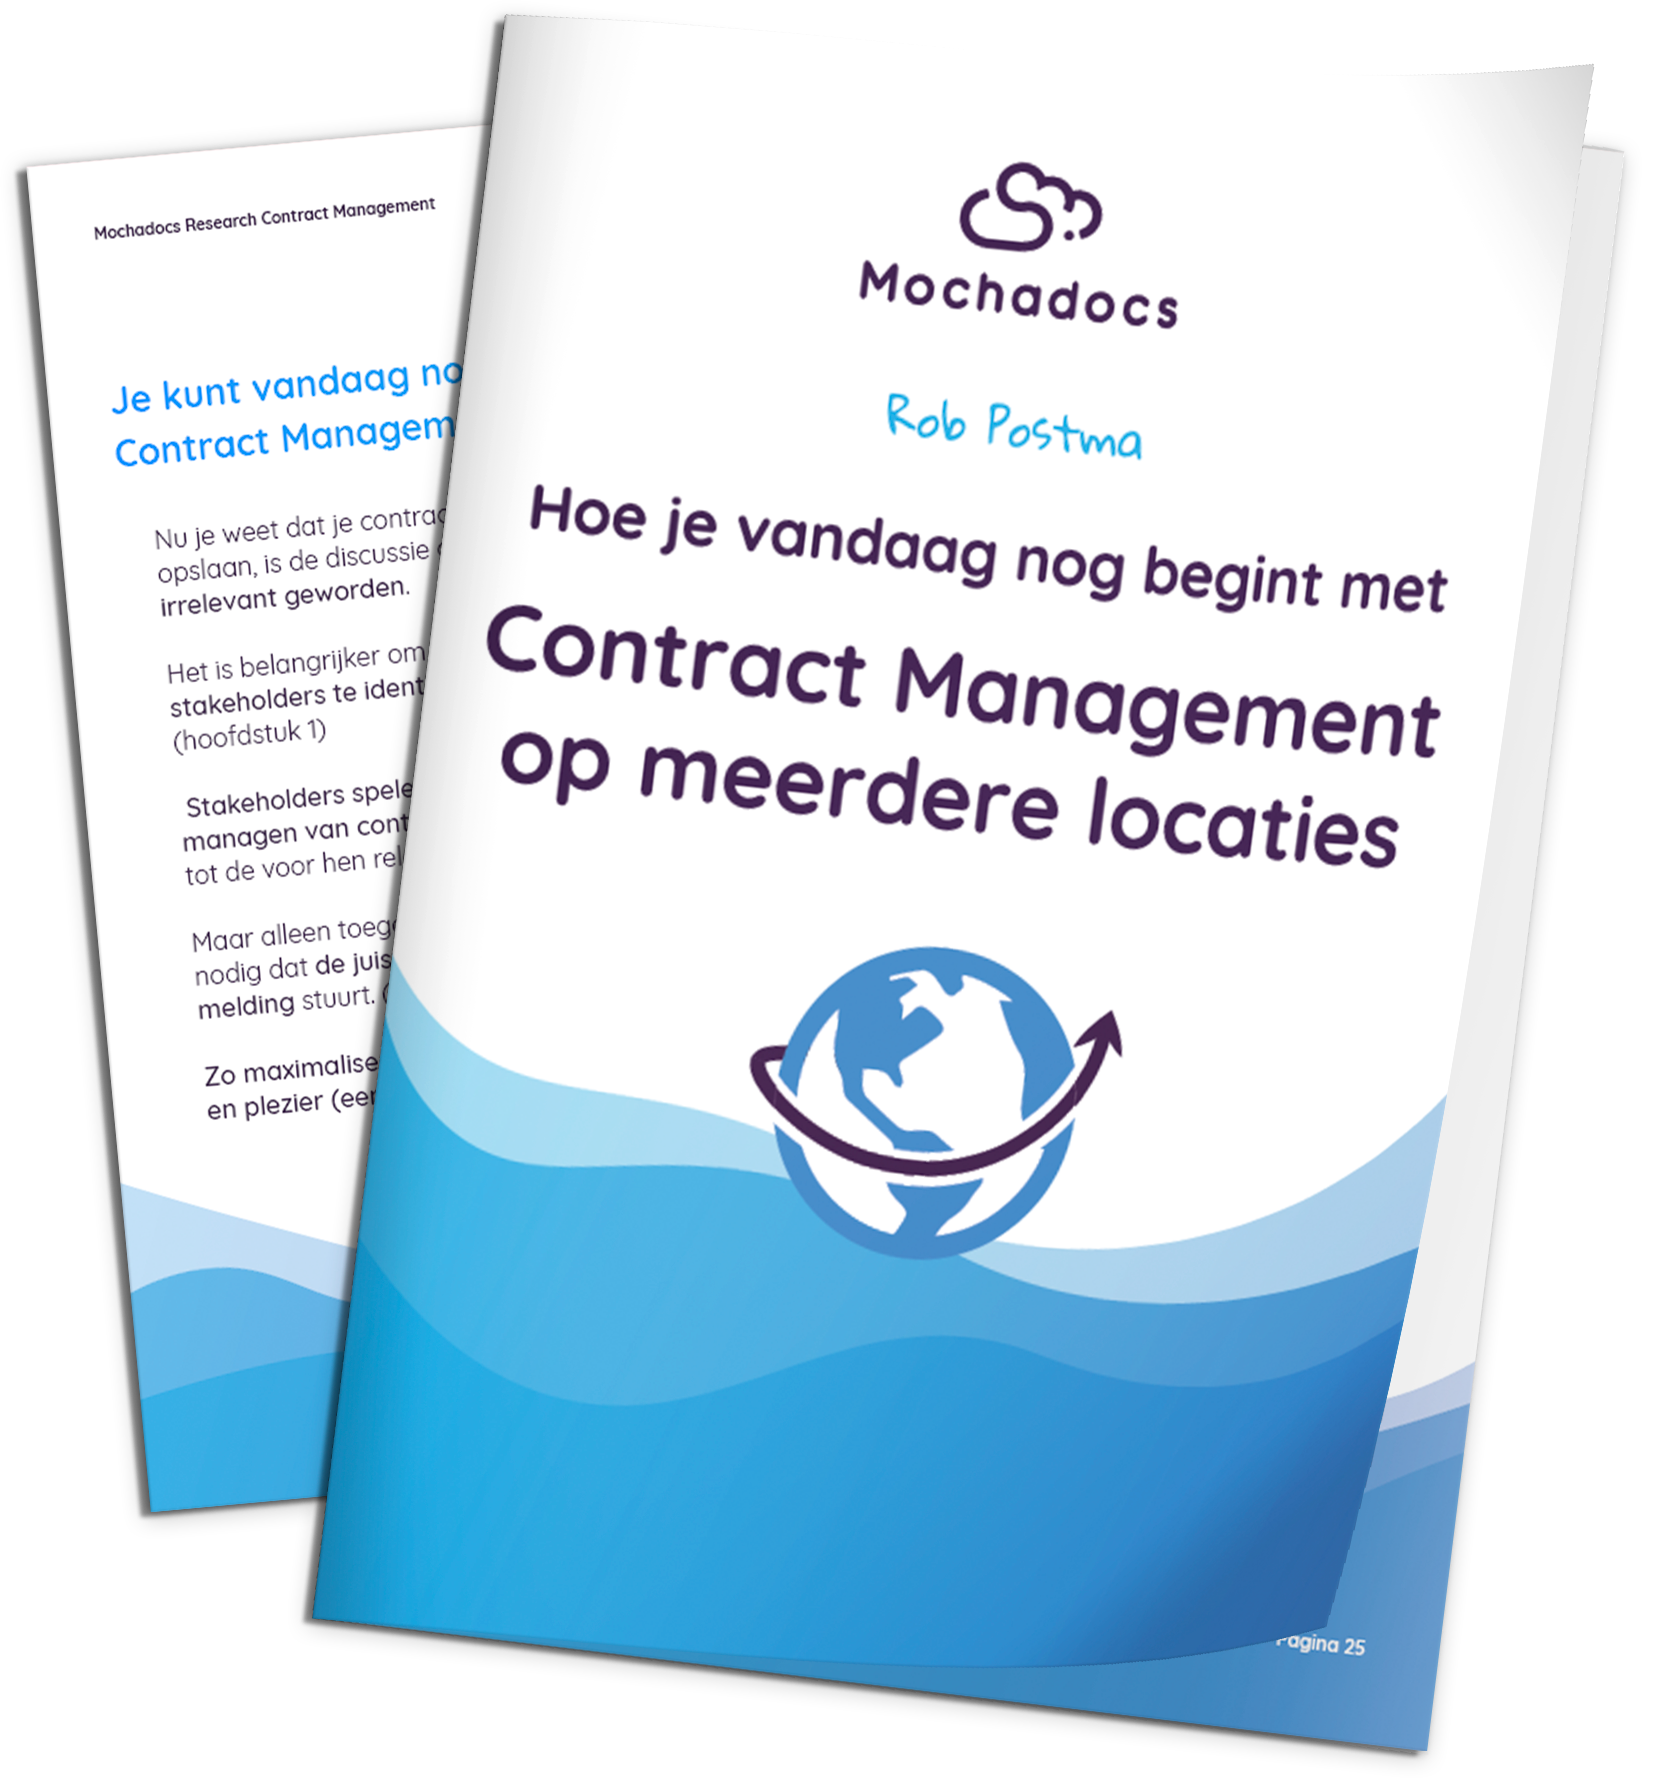 Mochadocs - Contract Management - eBook - Hoe je vandaag nog begint met Contract Management op meerdere locaties